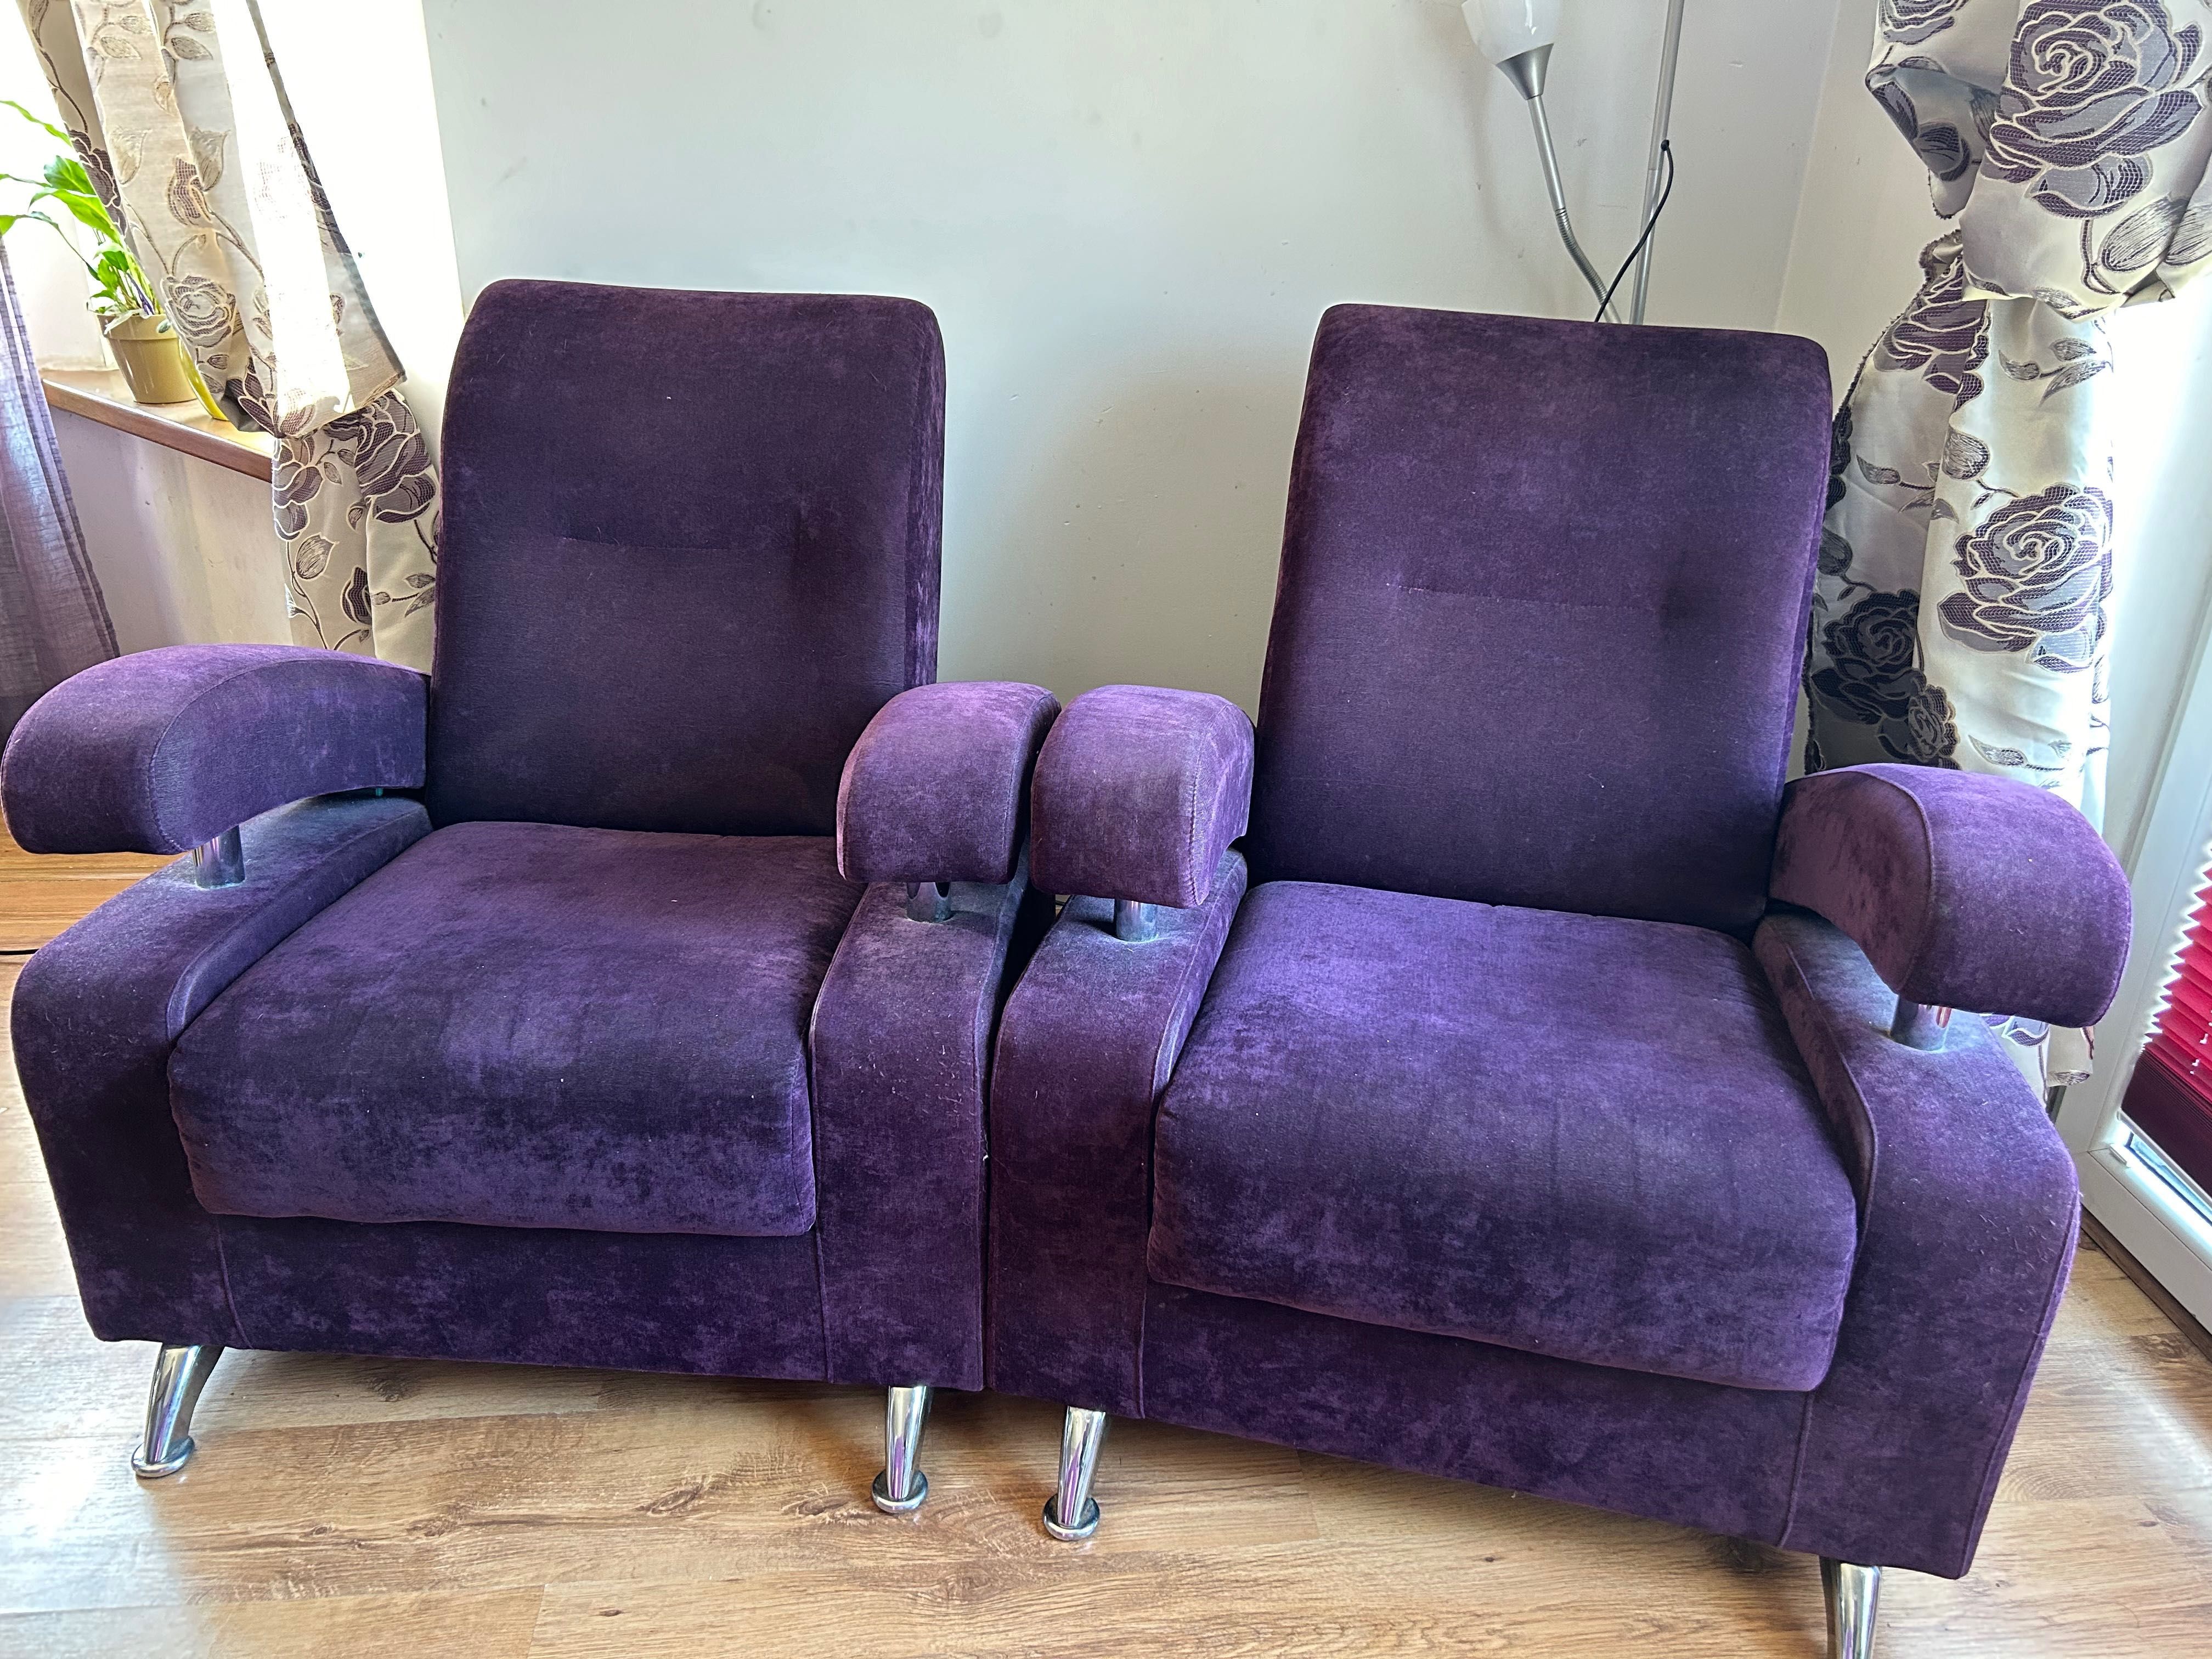 Używane fioletowe fotele